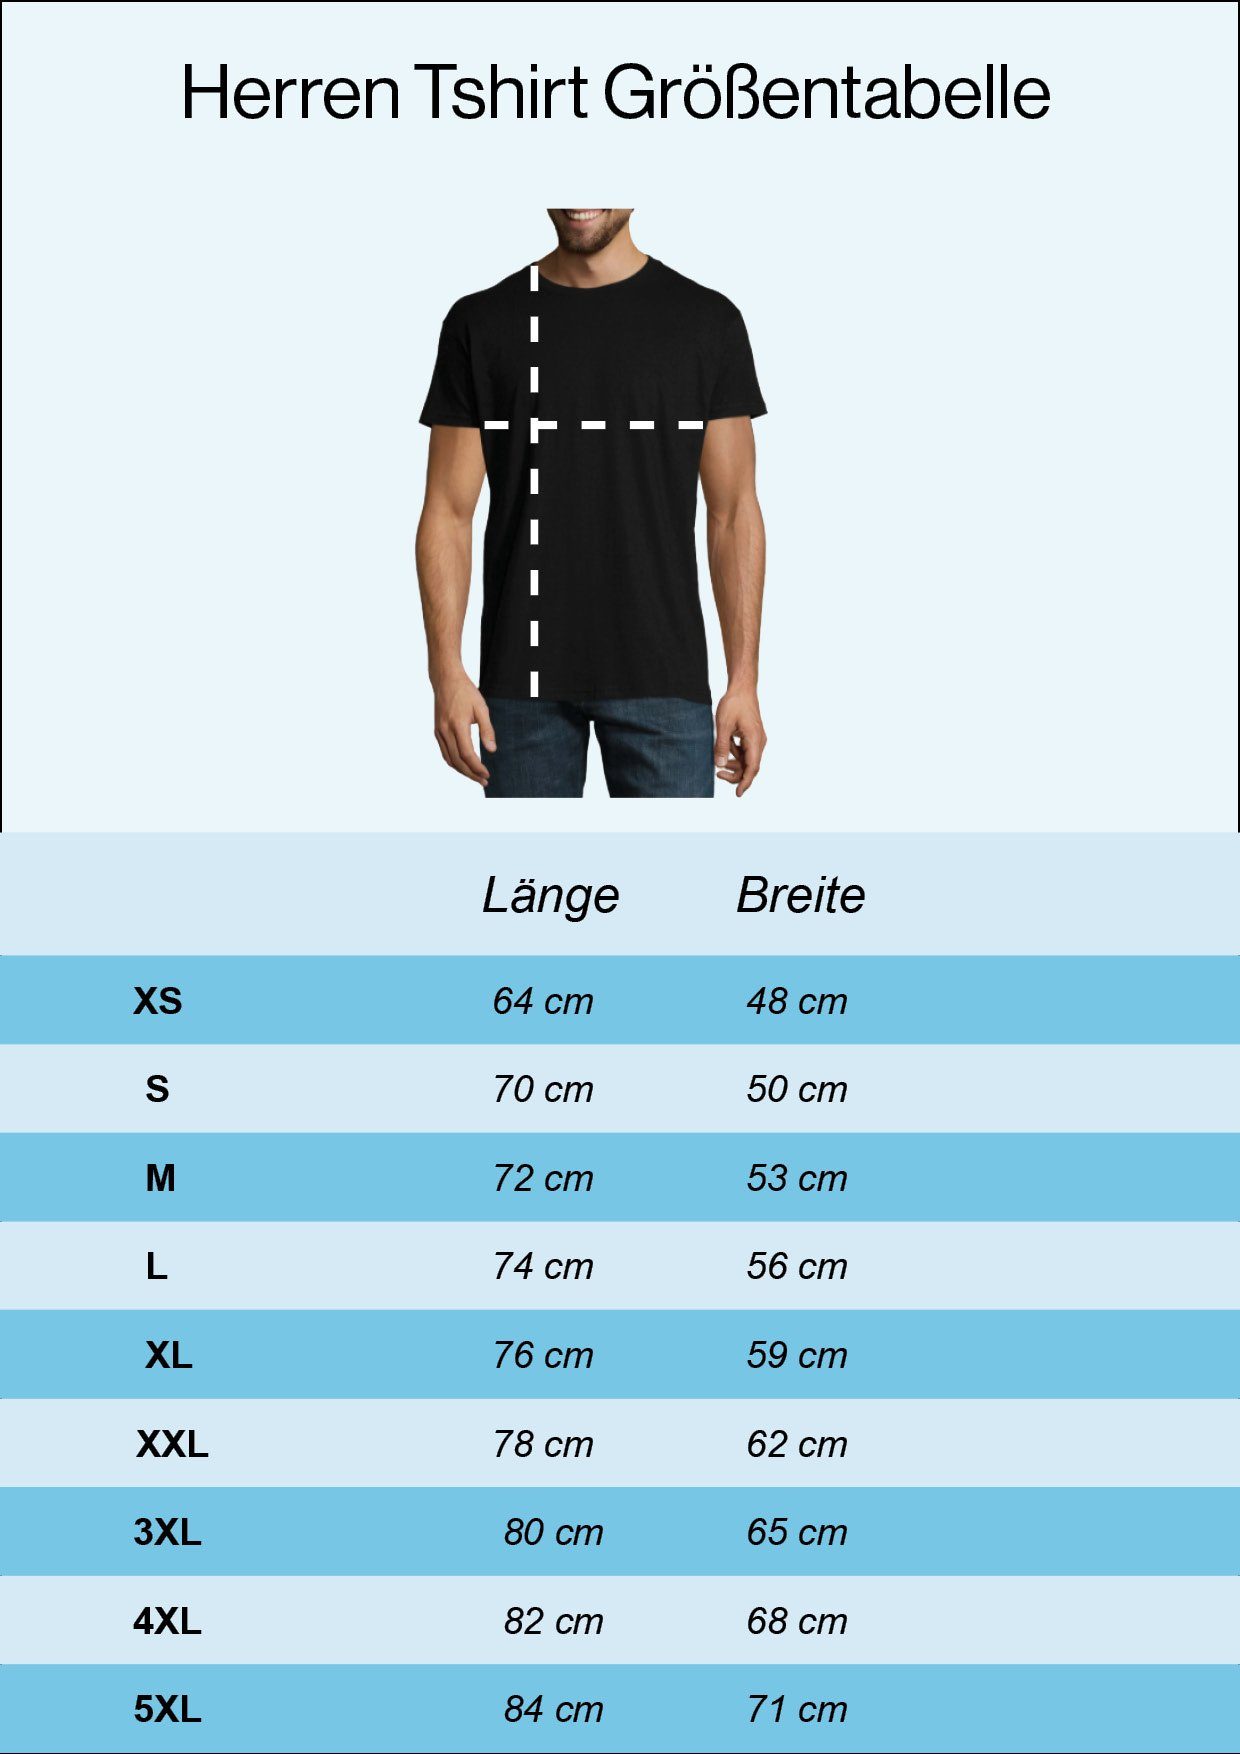 Youth Designz Navyblau trendigem Zweitakt T-Shirt Frontprint Die mit Für Herren Ewigkeit Shirt